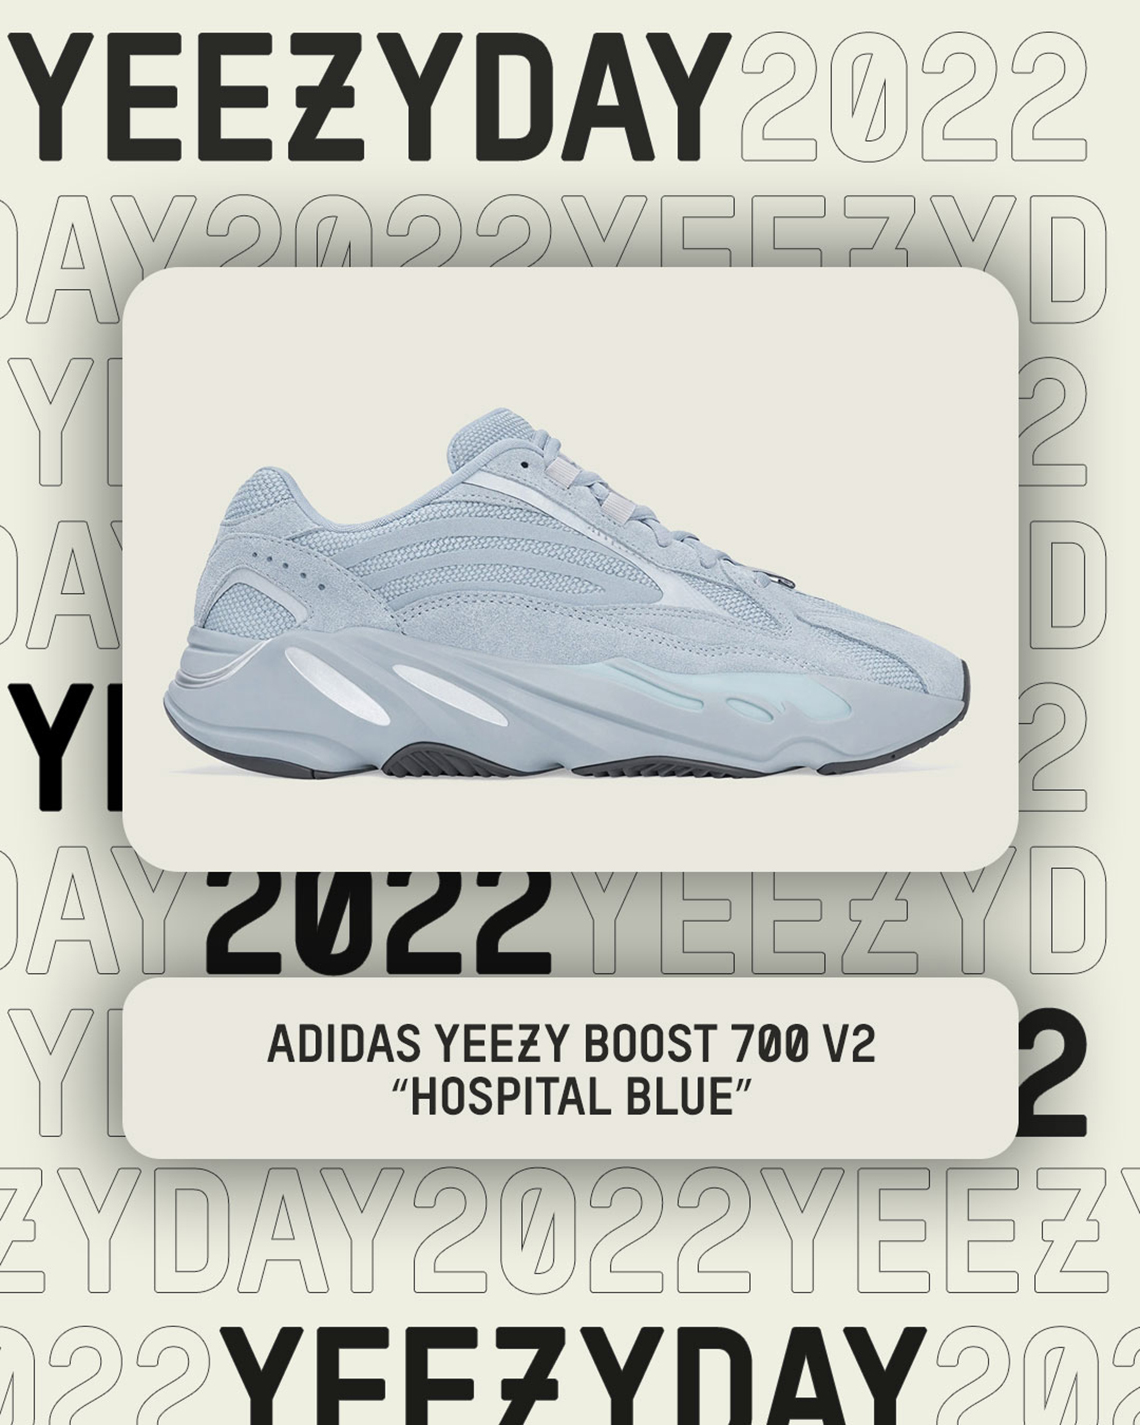 Yeezy Day 2022 footwear adidas terrex free hiker primeblu fz3626 blue V2 Hospital Blue